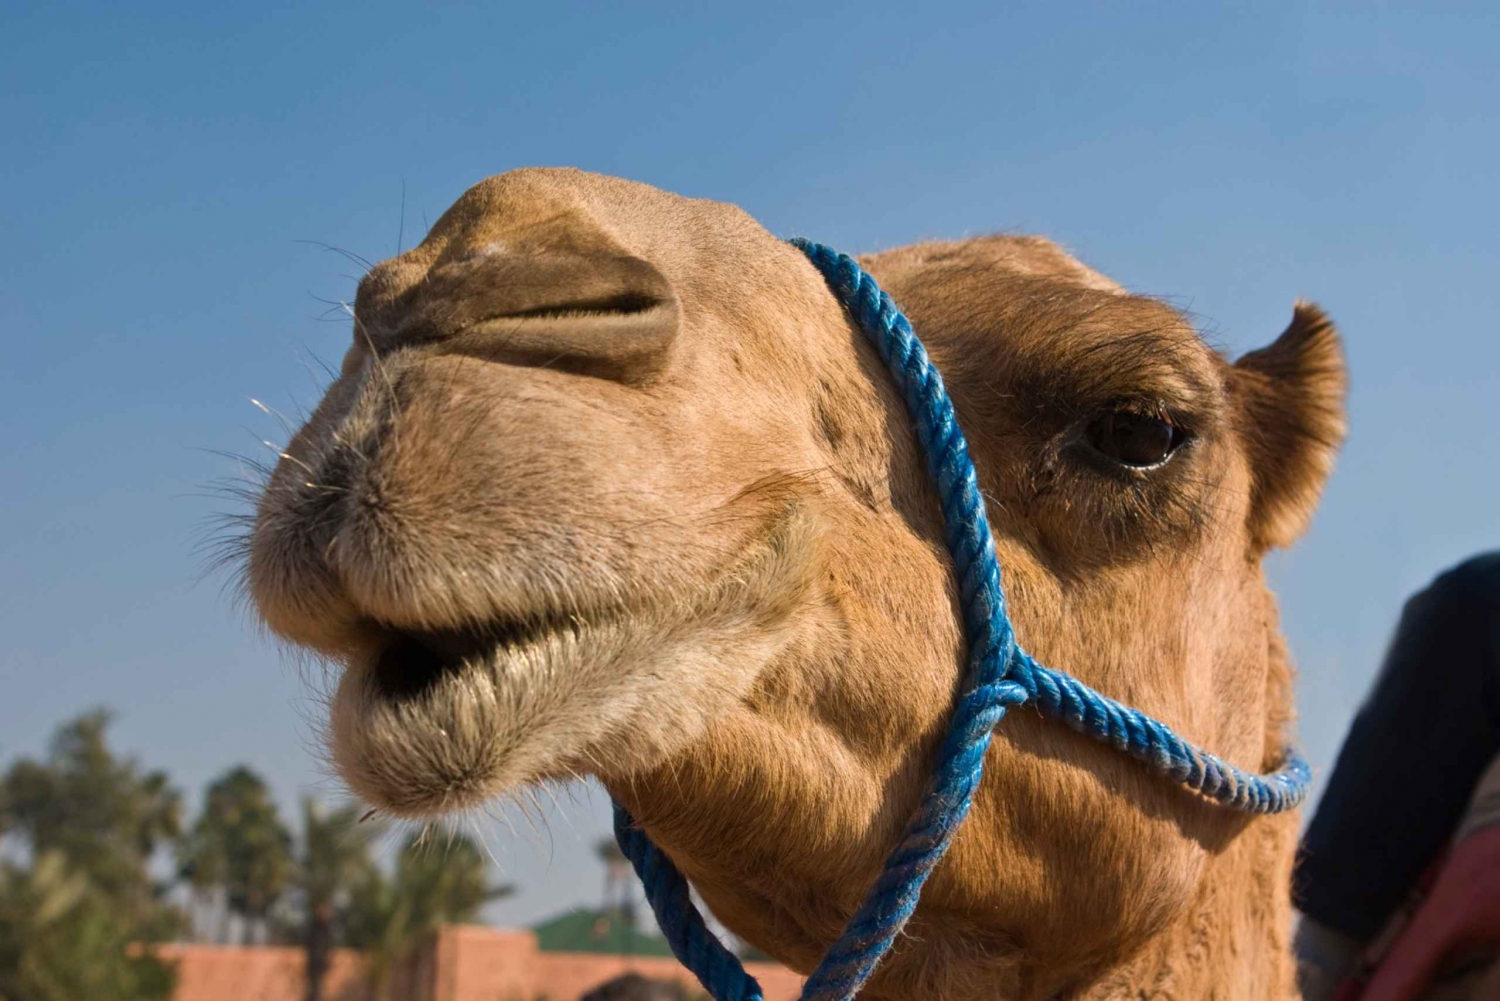 Camel Ride Marrakech Palmeraie